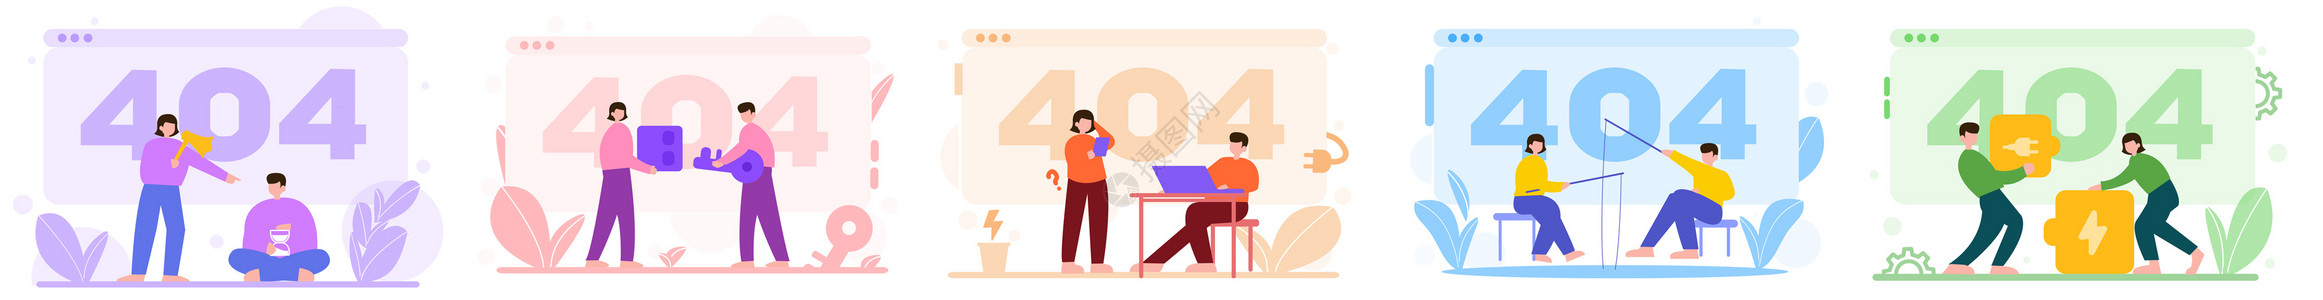 移动电源场景彩色404等待电源催促人物场景插图插画